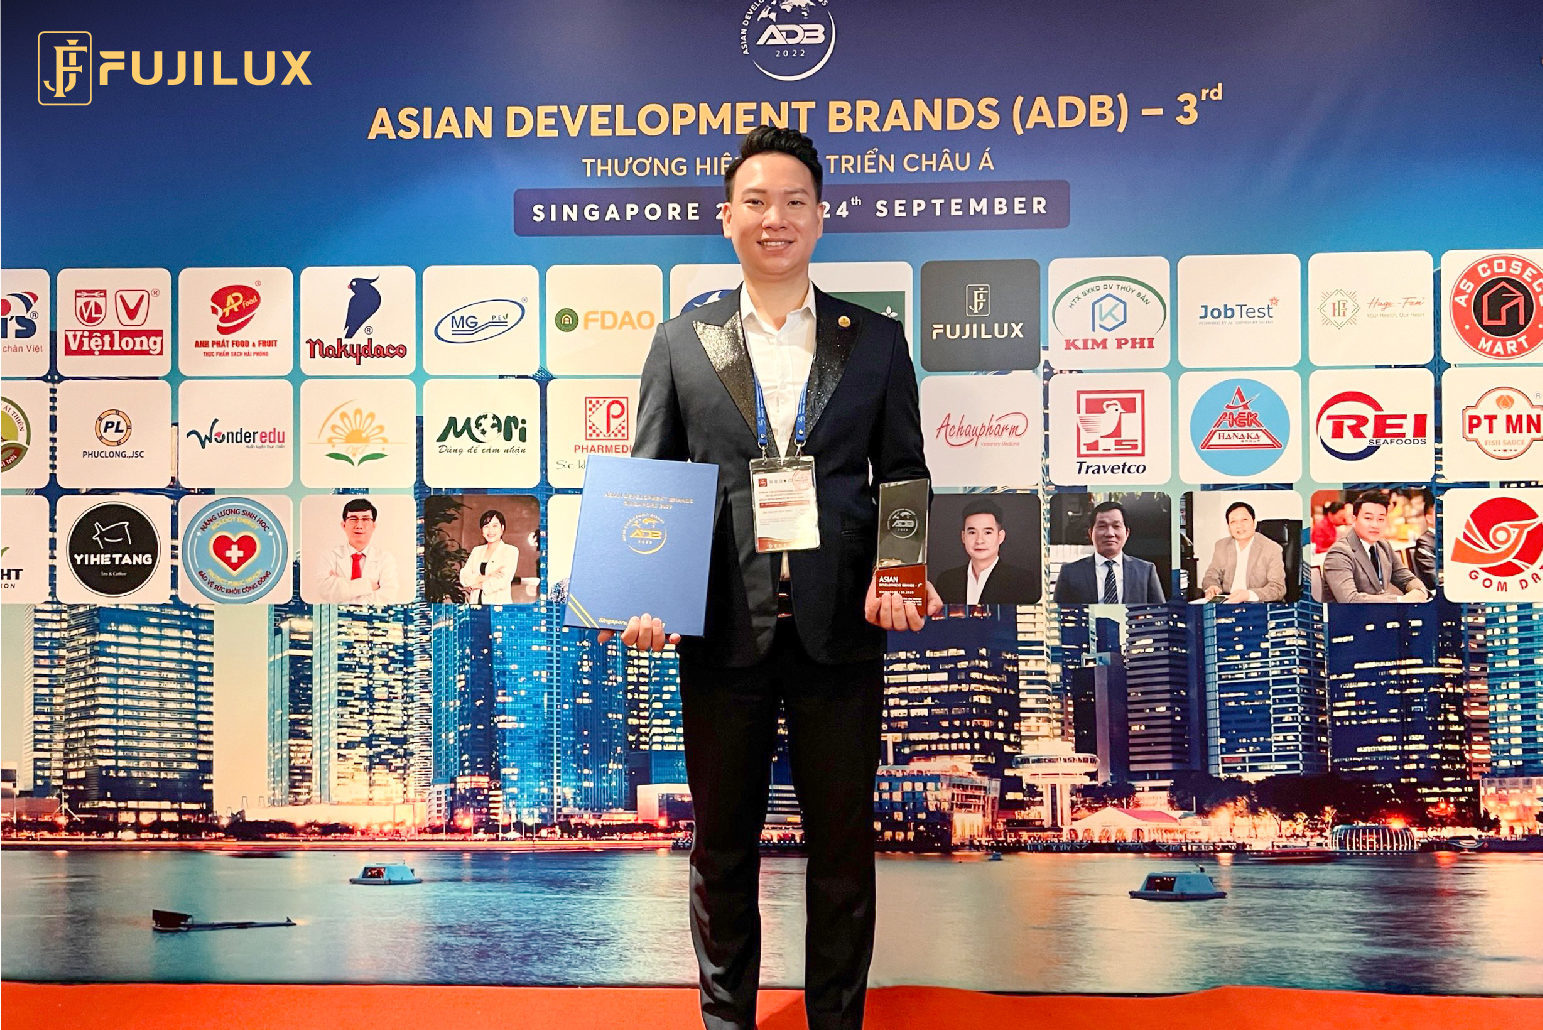 Fuji Luxury vinh dự nhận danh hiệu Thương hiệu phát triển Châu Á (lần III) năm 2022